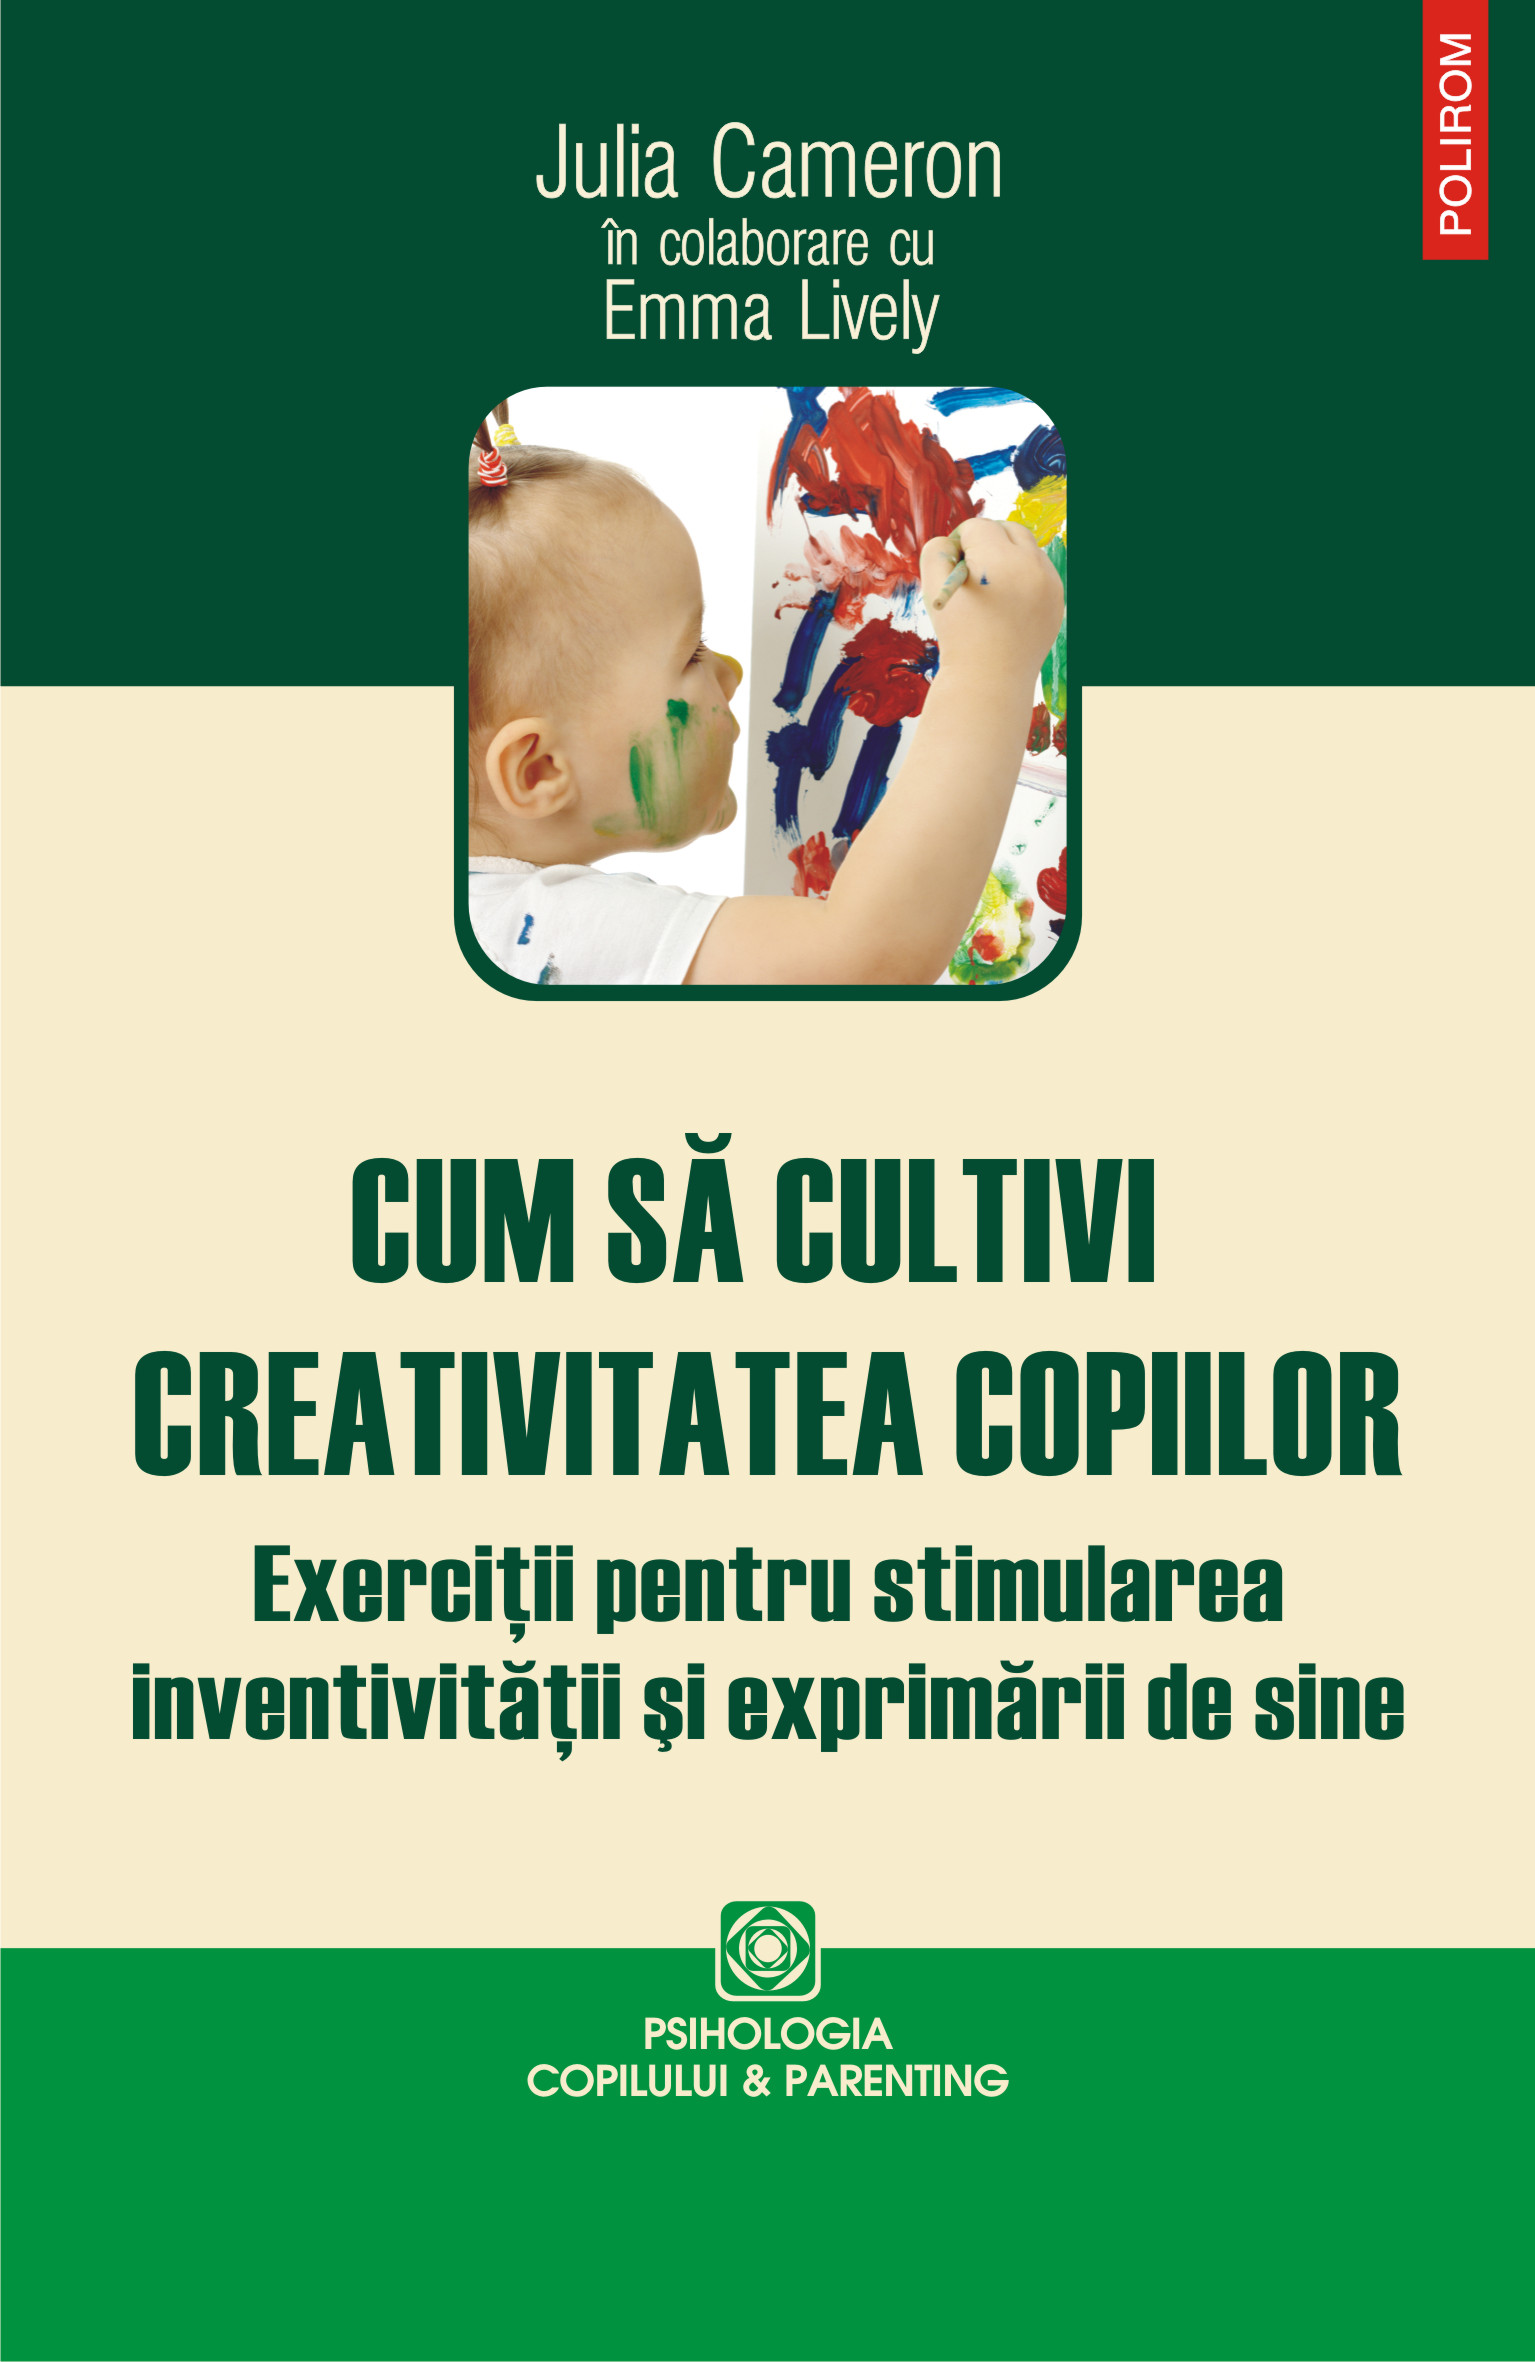 eBook Cum sa cultivi creativitatea copiilor - Emma Lively